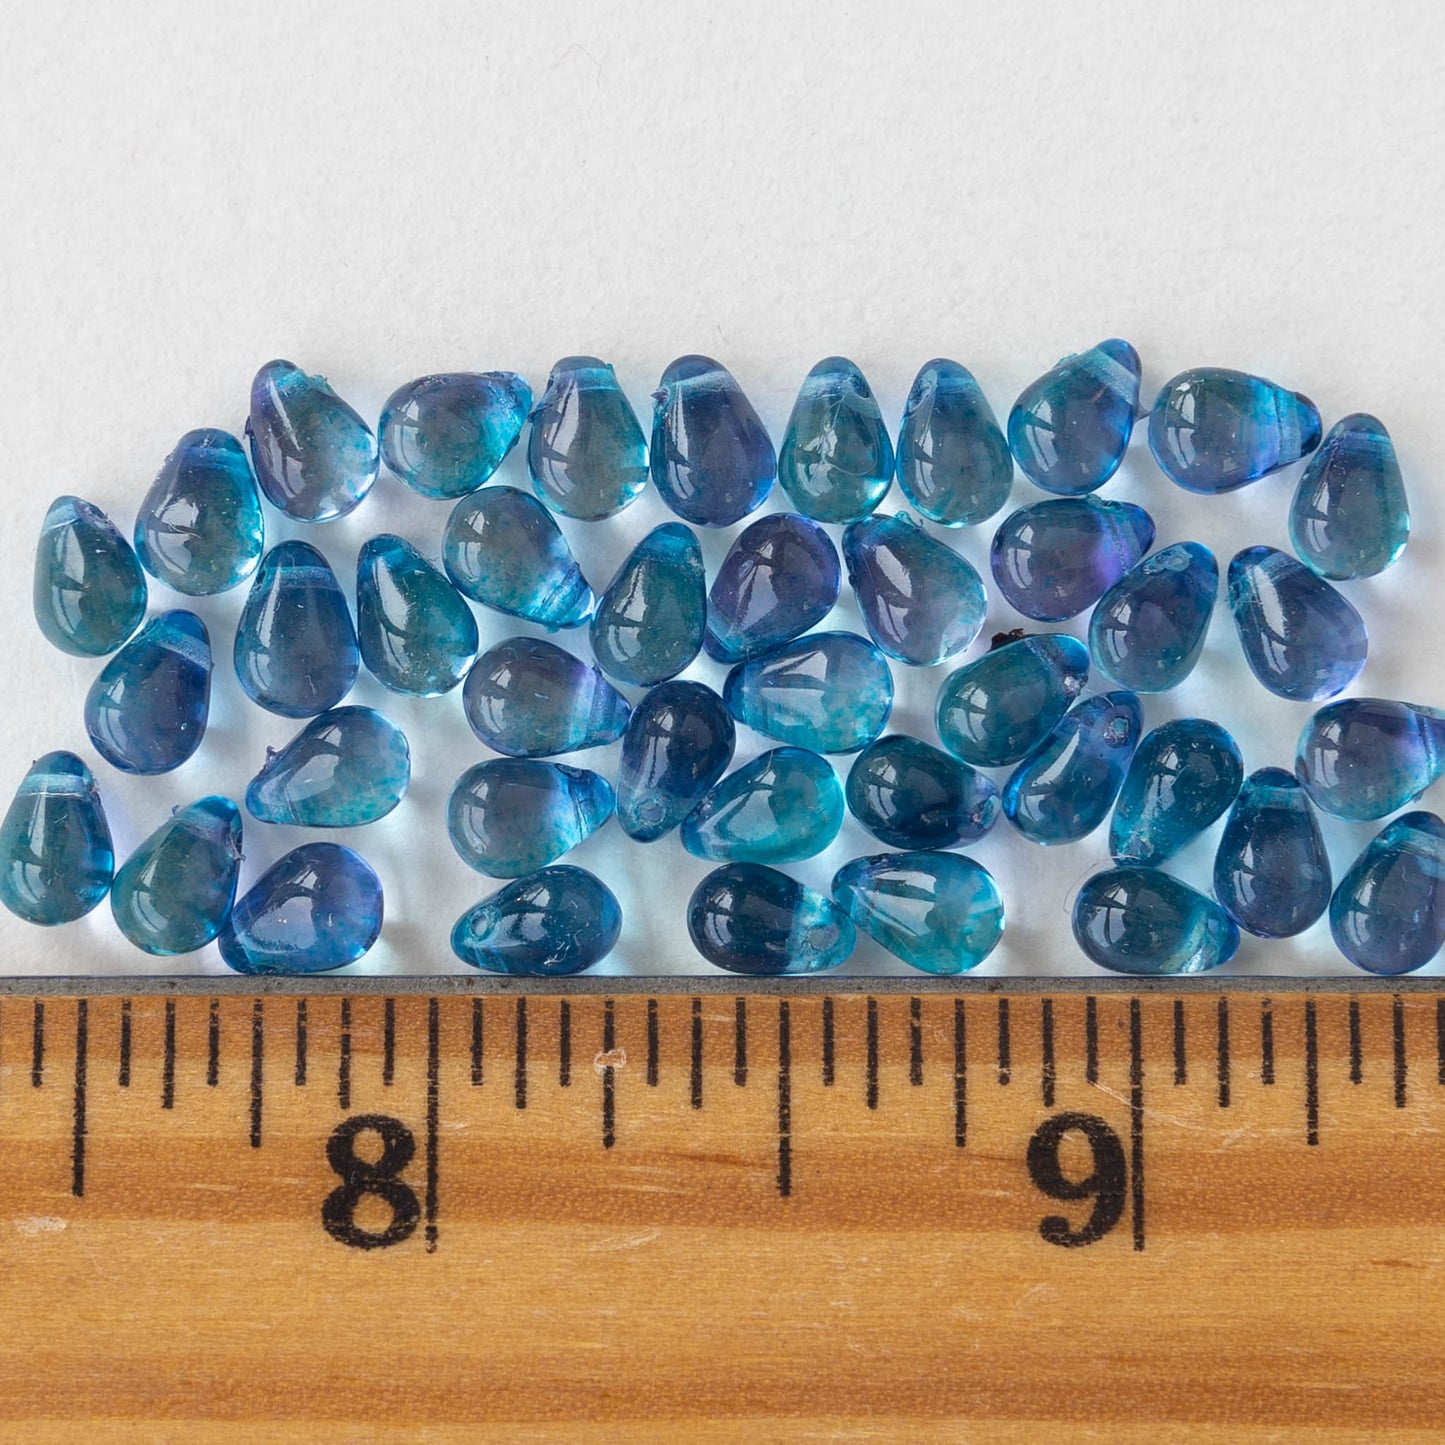 4x6mm Glass Teardrop Beads - Azure Blue - 80 Beads